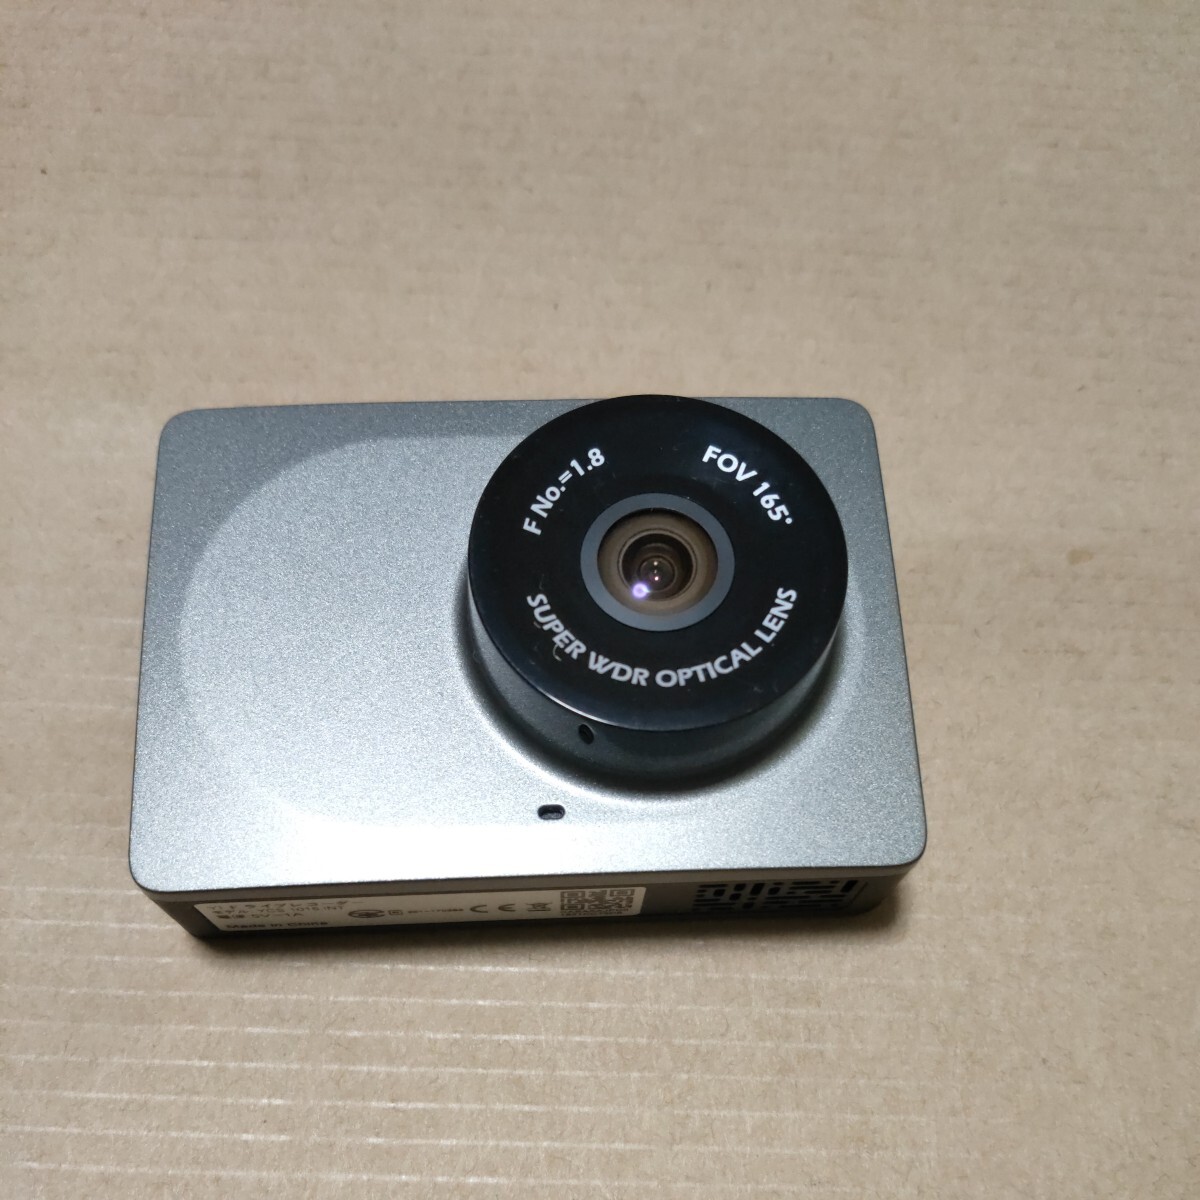 Yi регистратор пути (drive recorder) Xiaomi панель приборов cam SD карта высокая прочность Sandisk HighEndurance 64GB имеется do RaRe ko